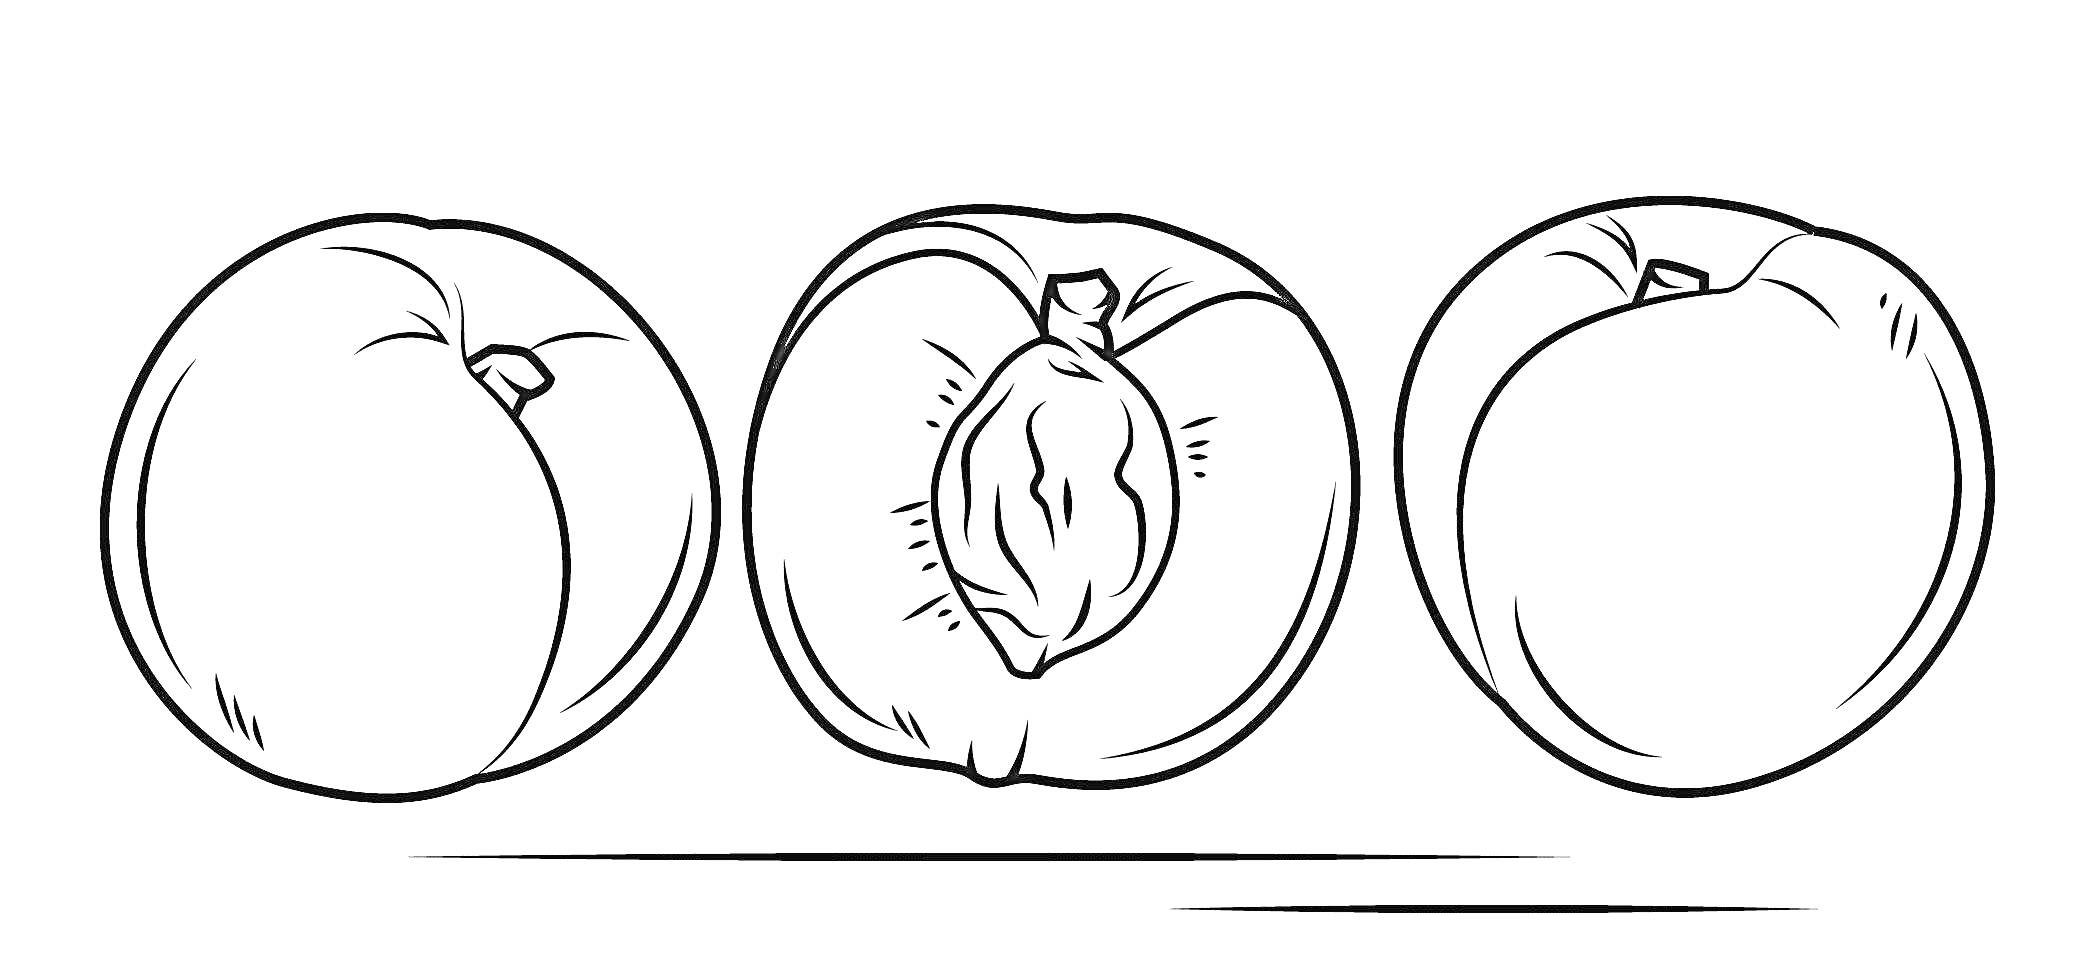 Три персика: целый, разрезанный пополам с косточкой, целый с листочком